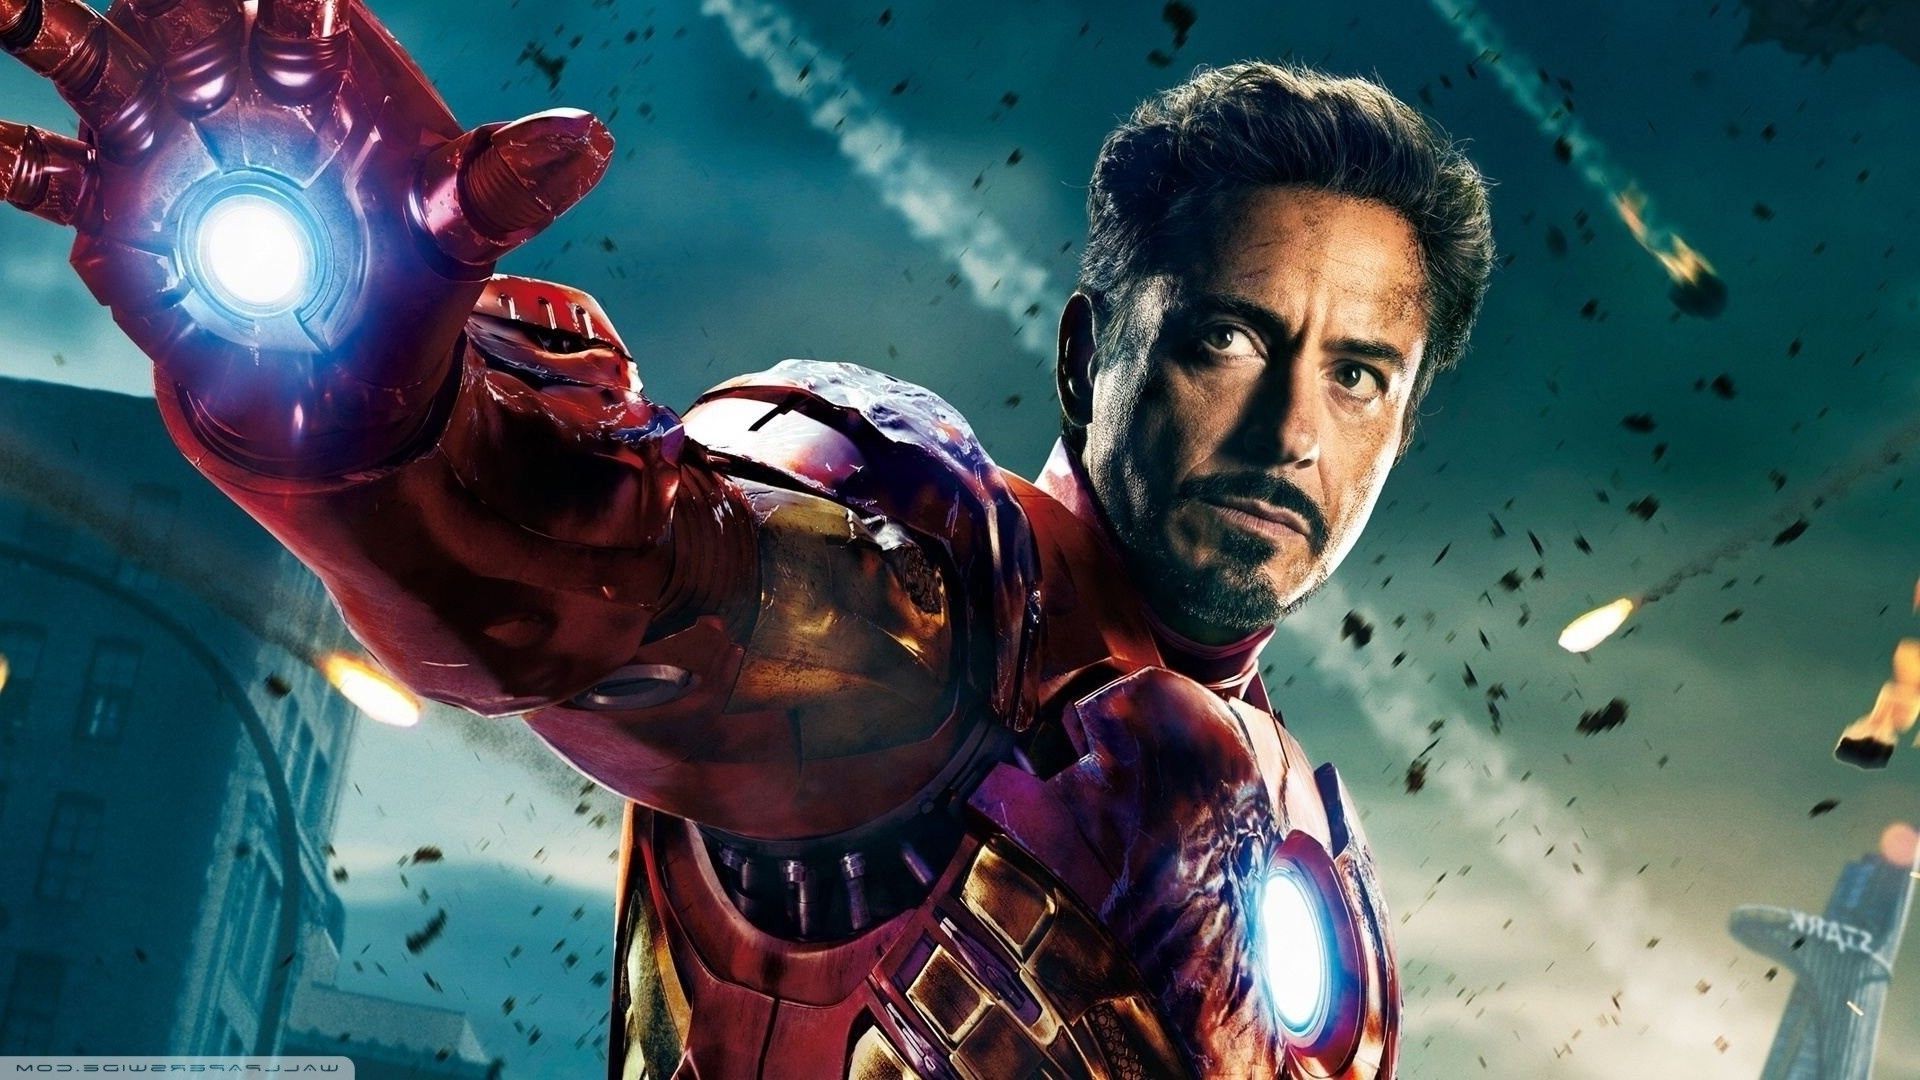 Robert Downey Jr Iron Man Wallpaper